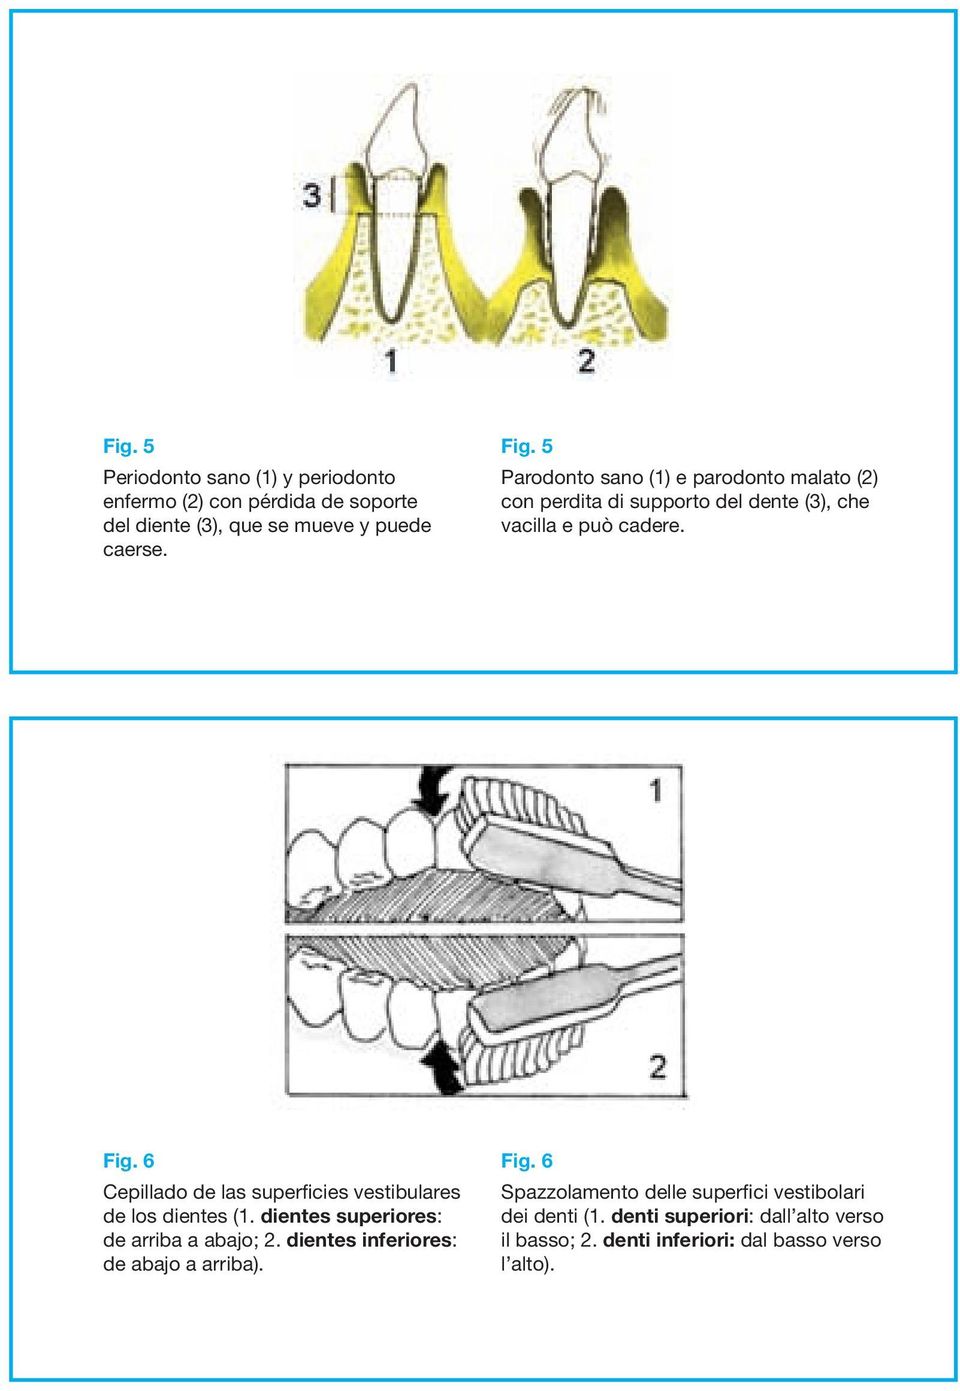 6 - Spazzolamento delle superfici vestibolari dei denti (1. denti superiori: dall alto verso il basso; 2. denti inferiori: dal basso verso l alto). Fig.